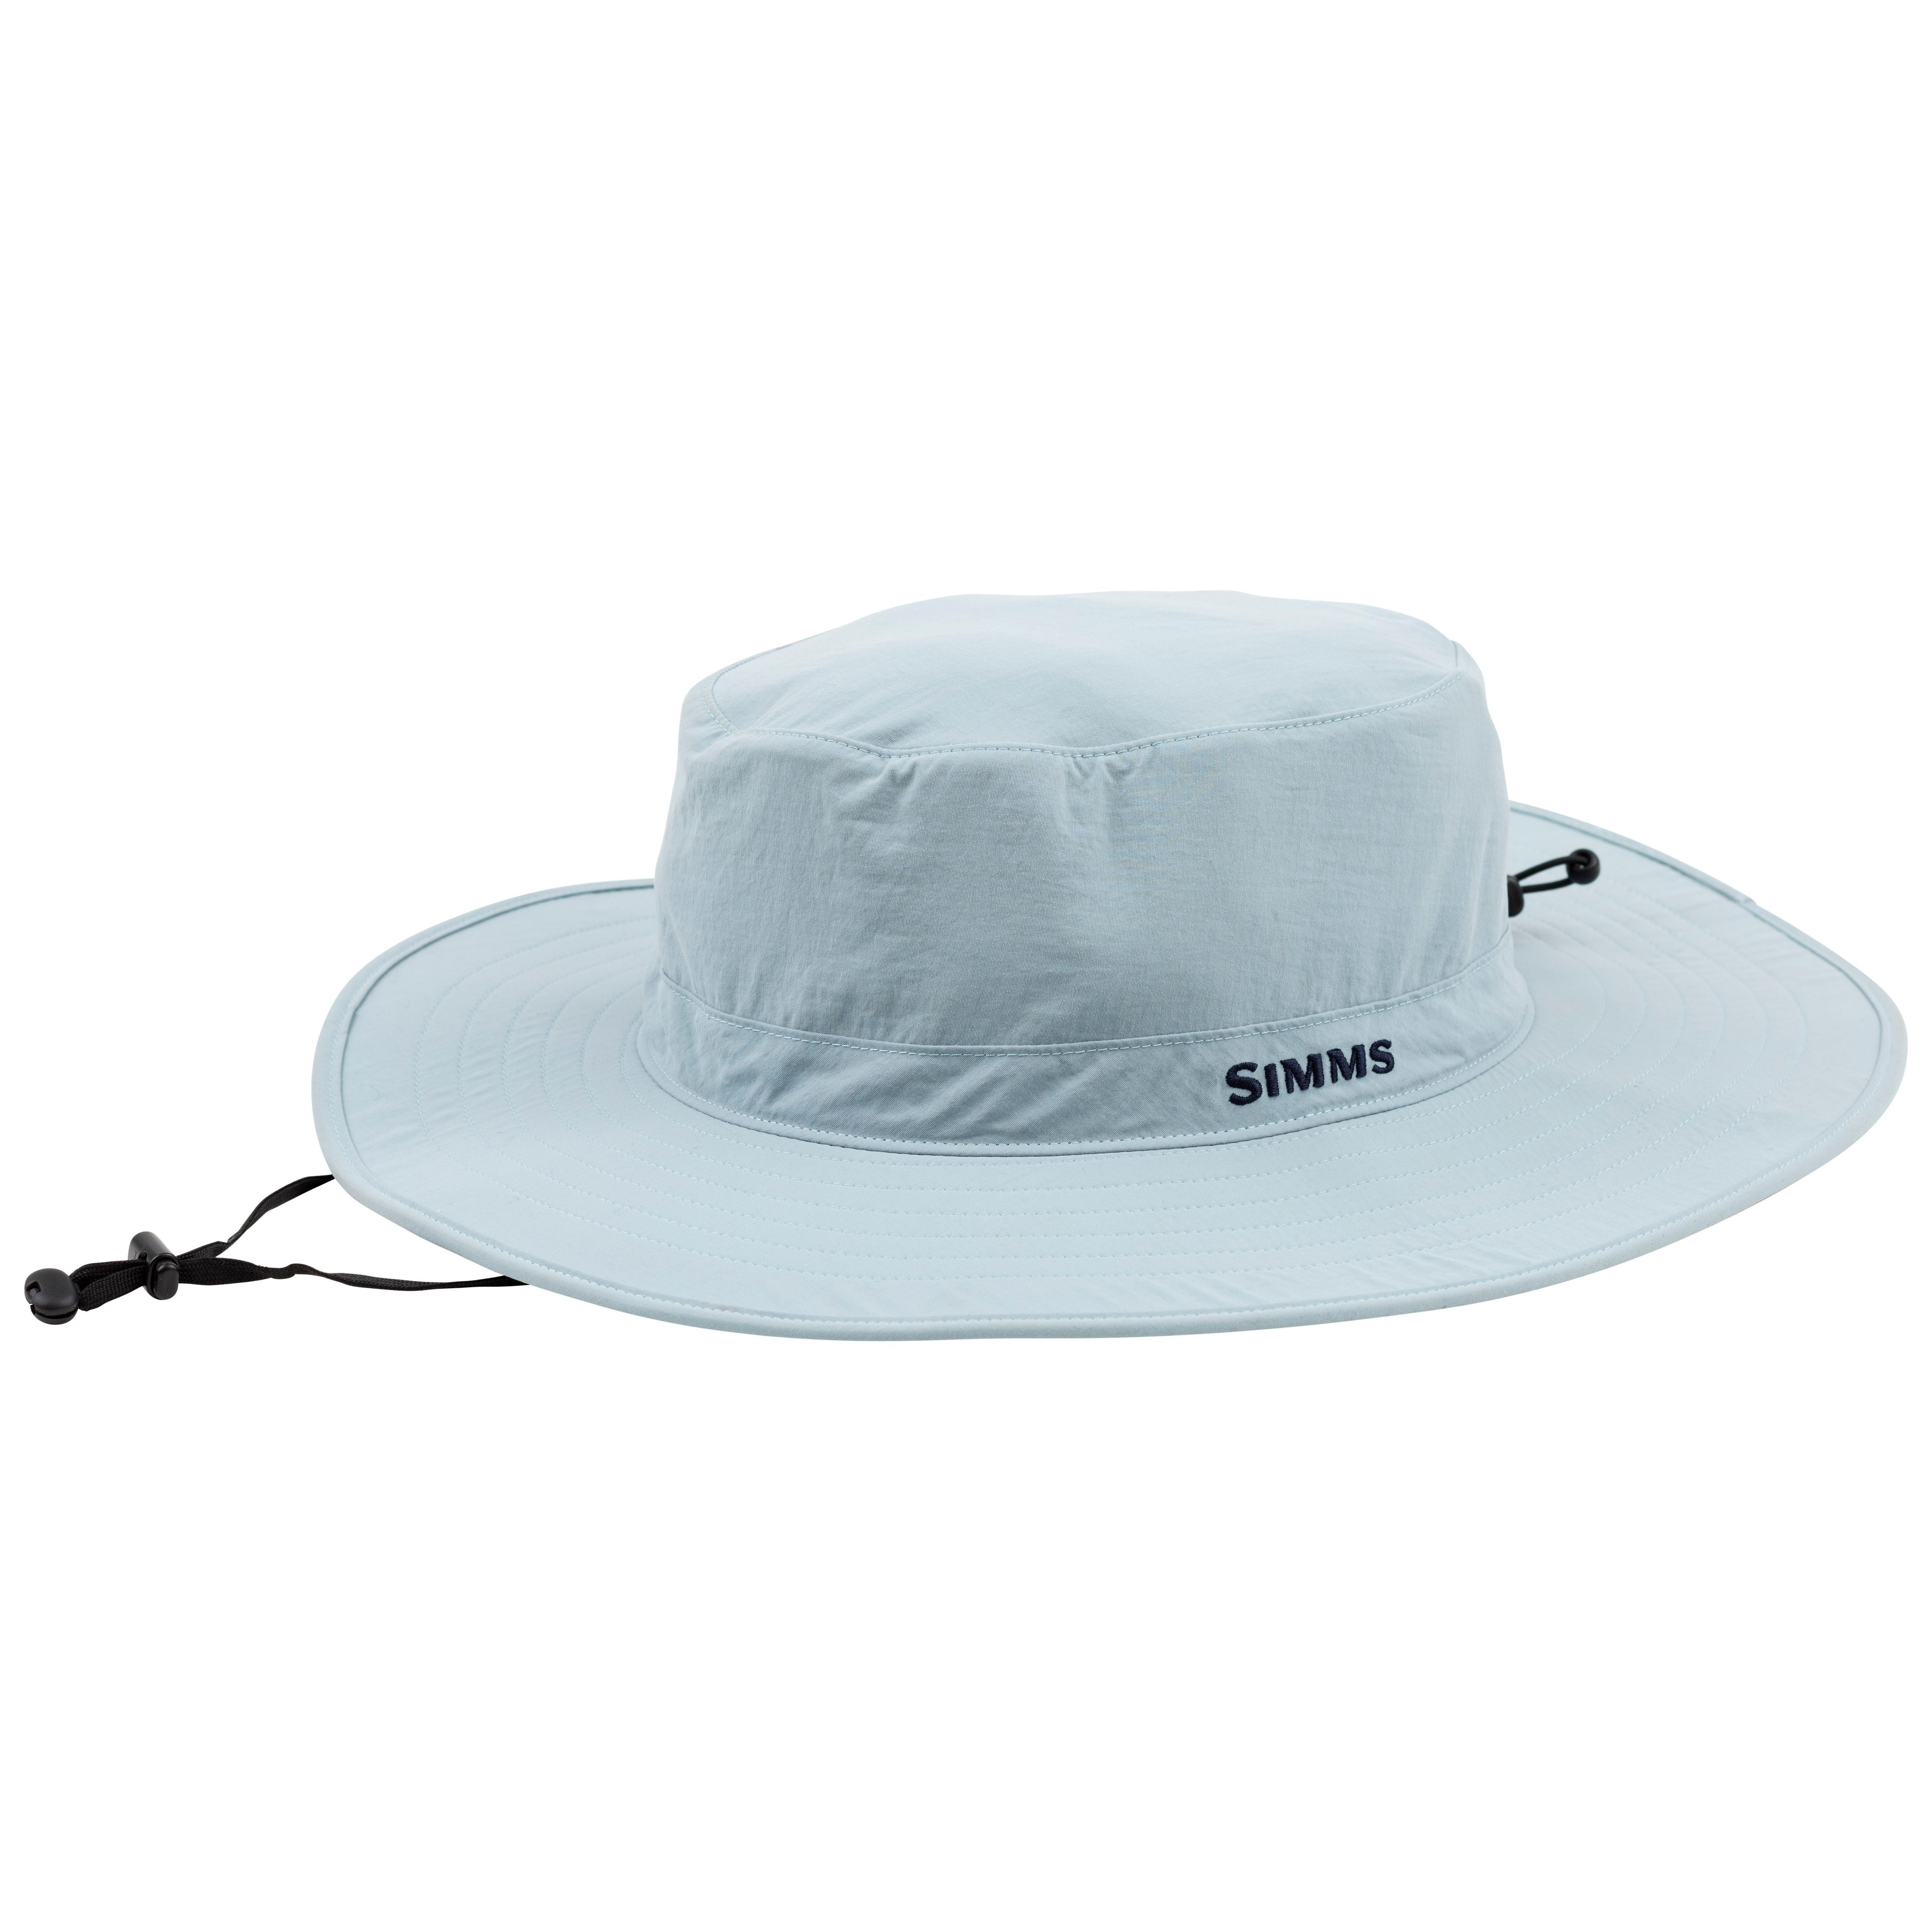 http://bearsden.com/cdn/shop/products/201-simms-superlight-solar-sombrero-grey-blue-01.jpg?v=1644611265